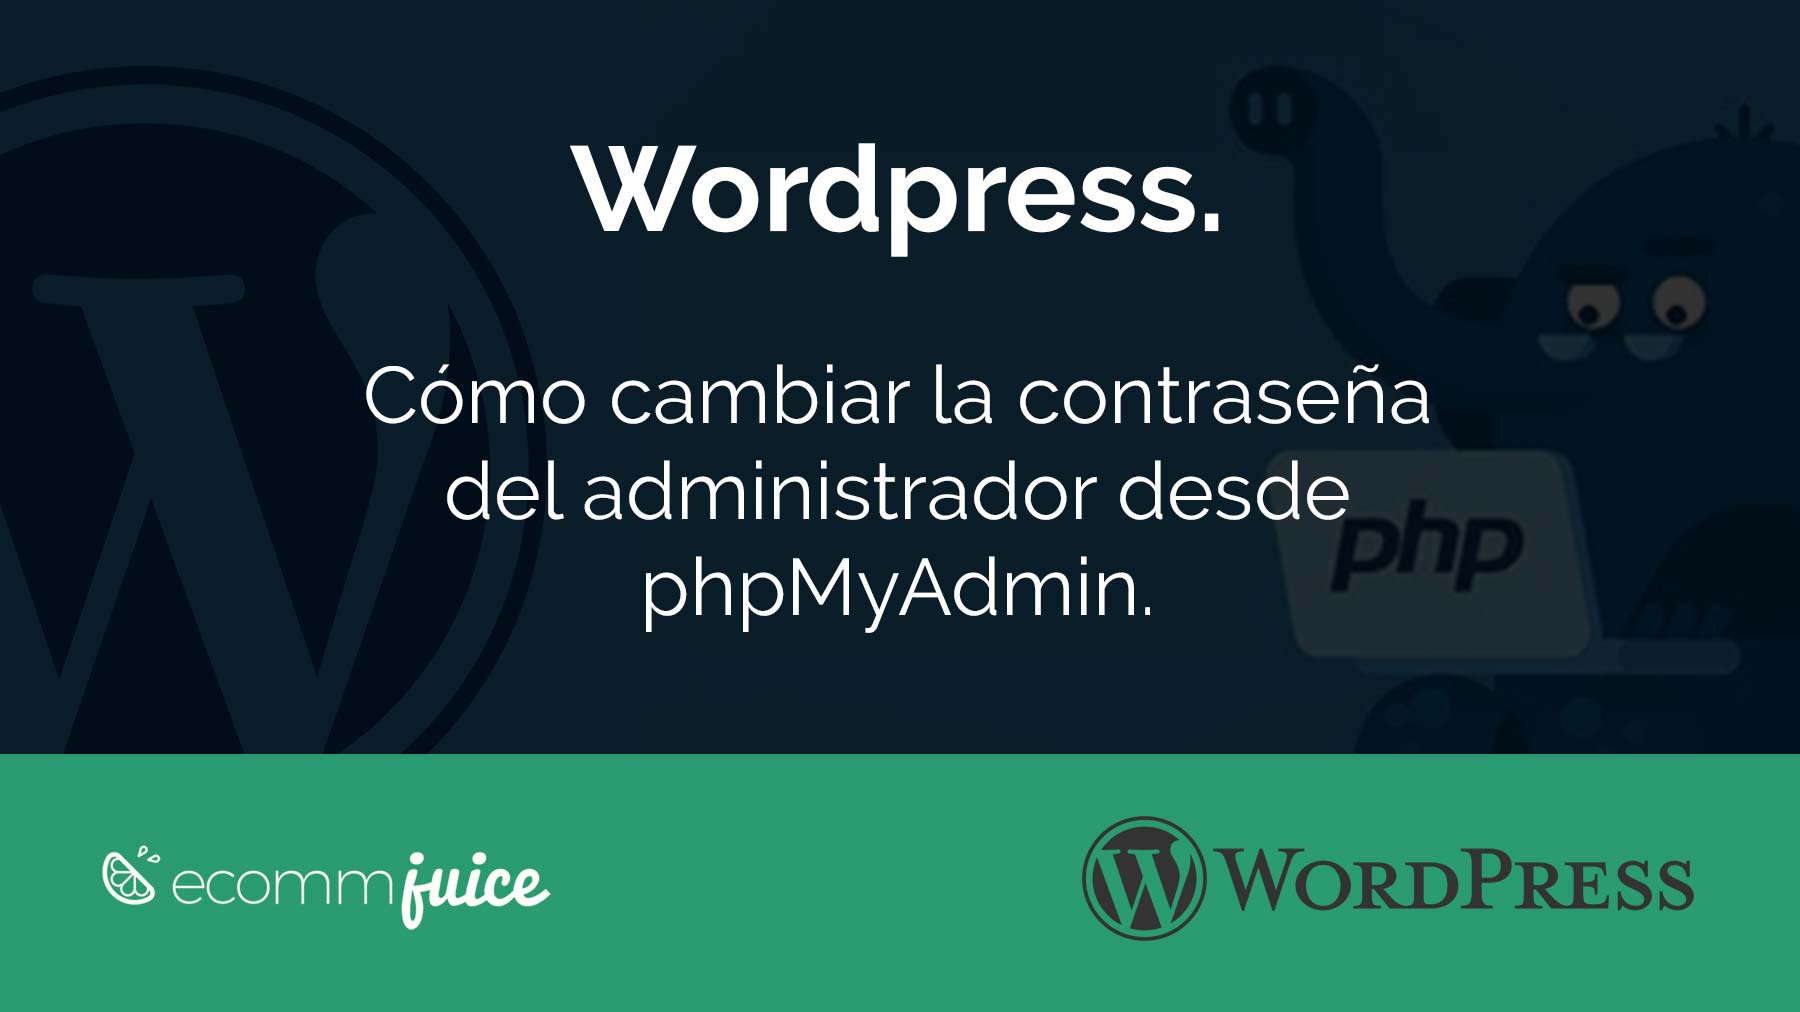 Wordpress. Como cambiar la contraseña desde phpMyAdmin